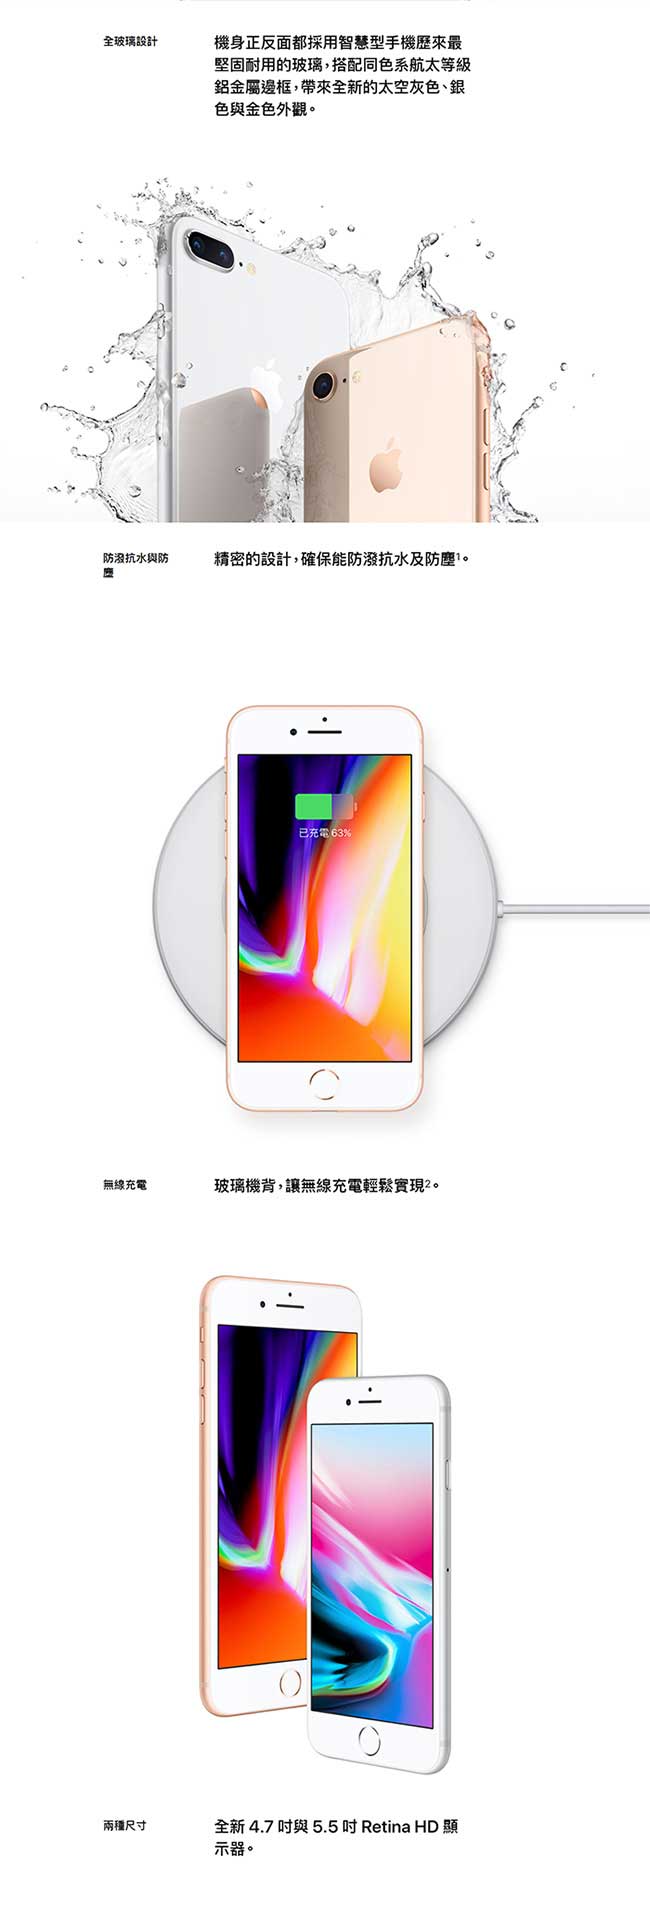 [贈品組合]Apple iPhone 8 Plus 64G 5.5吋智慧手機